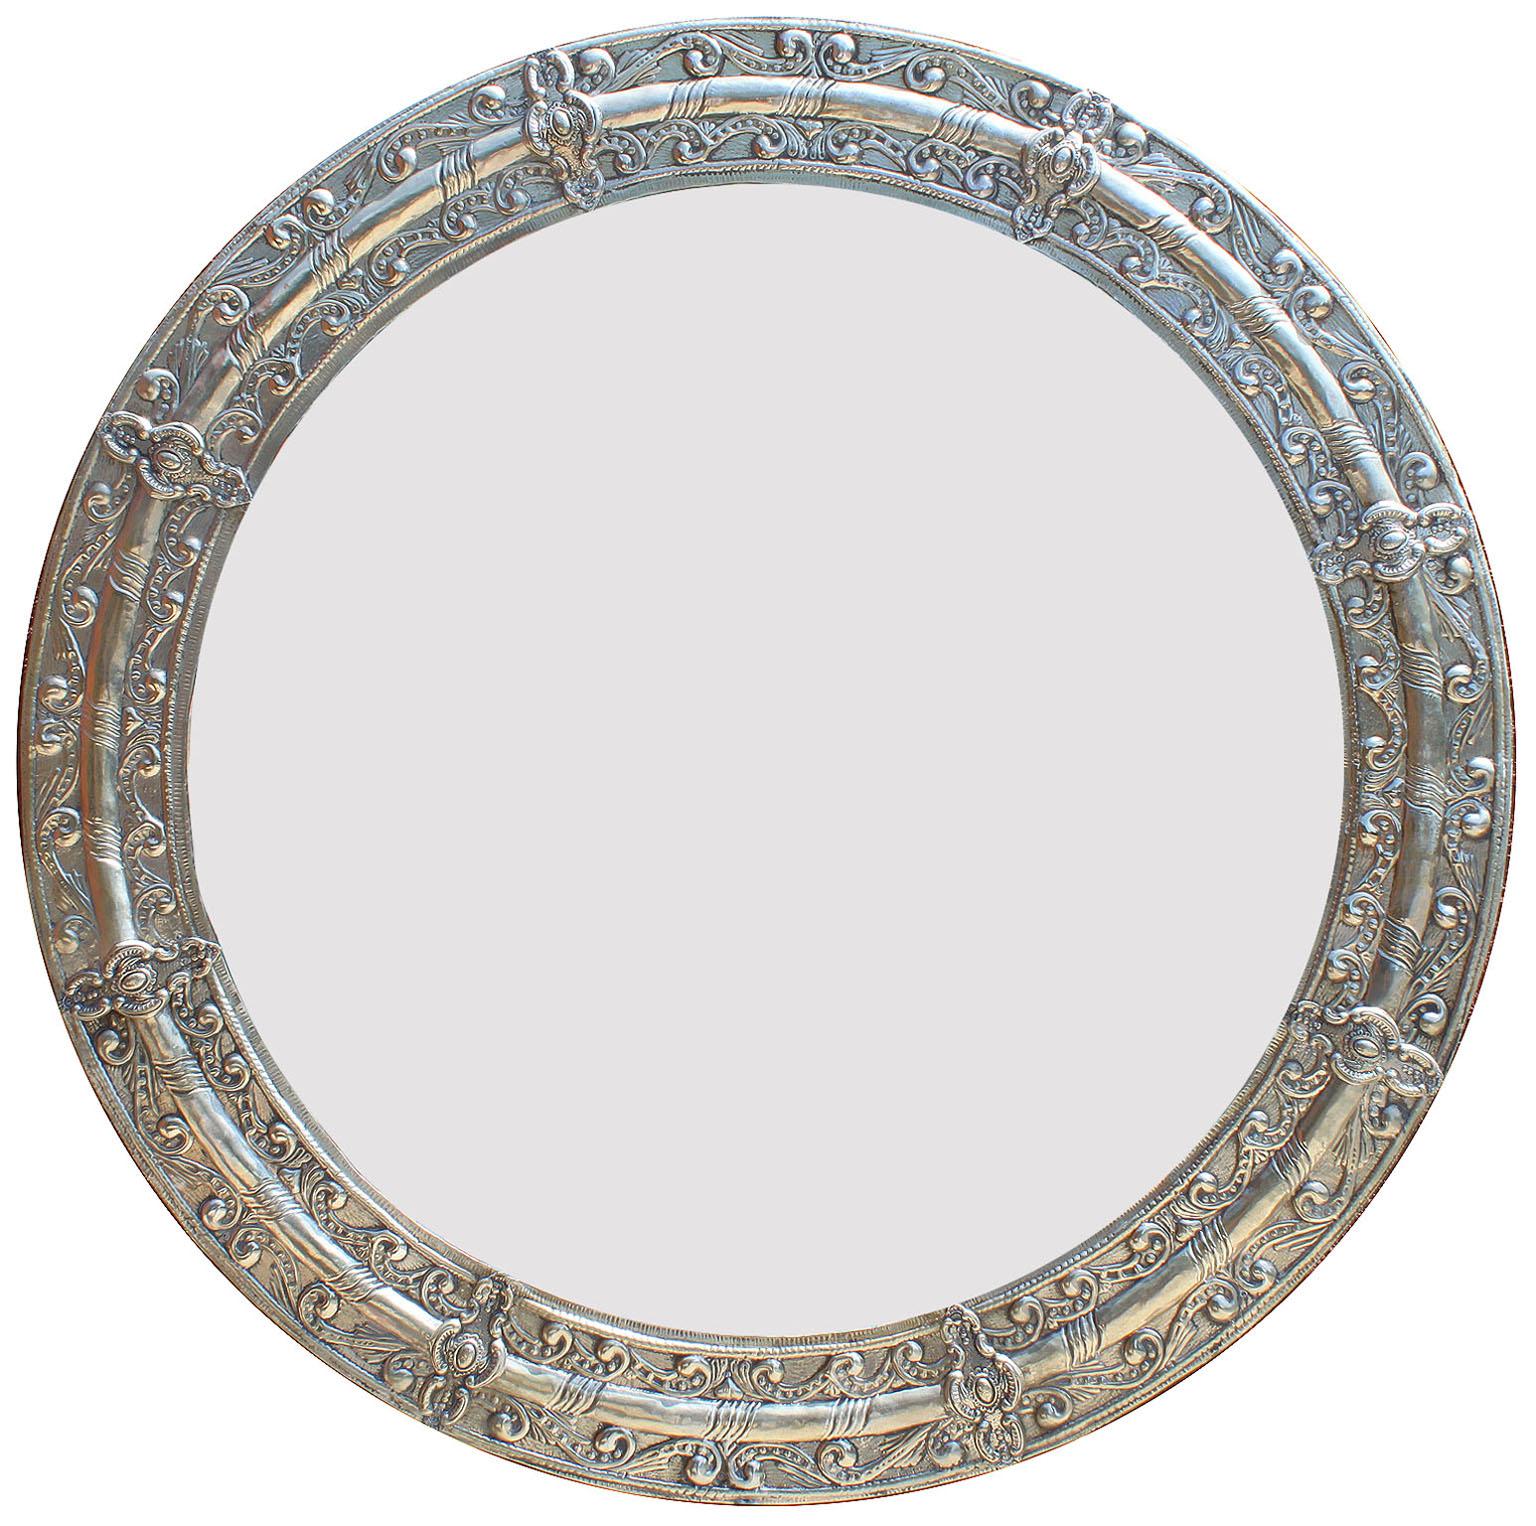 Pair of rare Portuguese embossed Alpaca silver circular mirror frames, circa 20th century.

Measures: Diameter 38 inches (96.5 cm)
Depth 1 1/4 inches (3.2 cm).

 